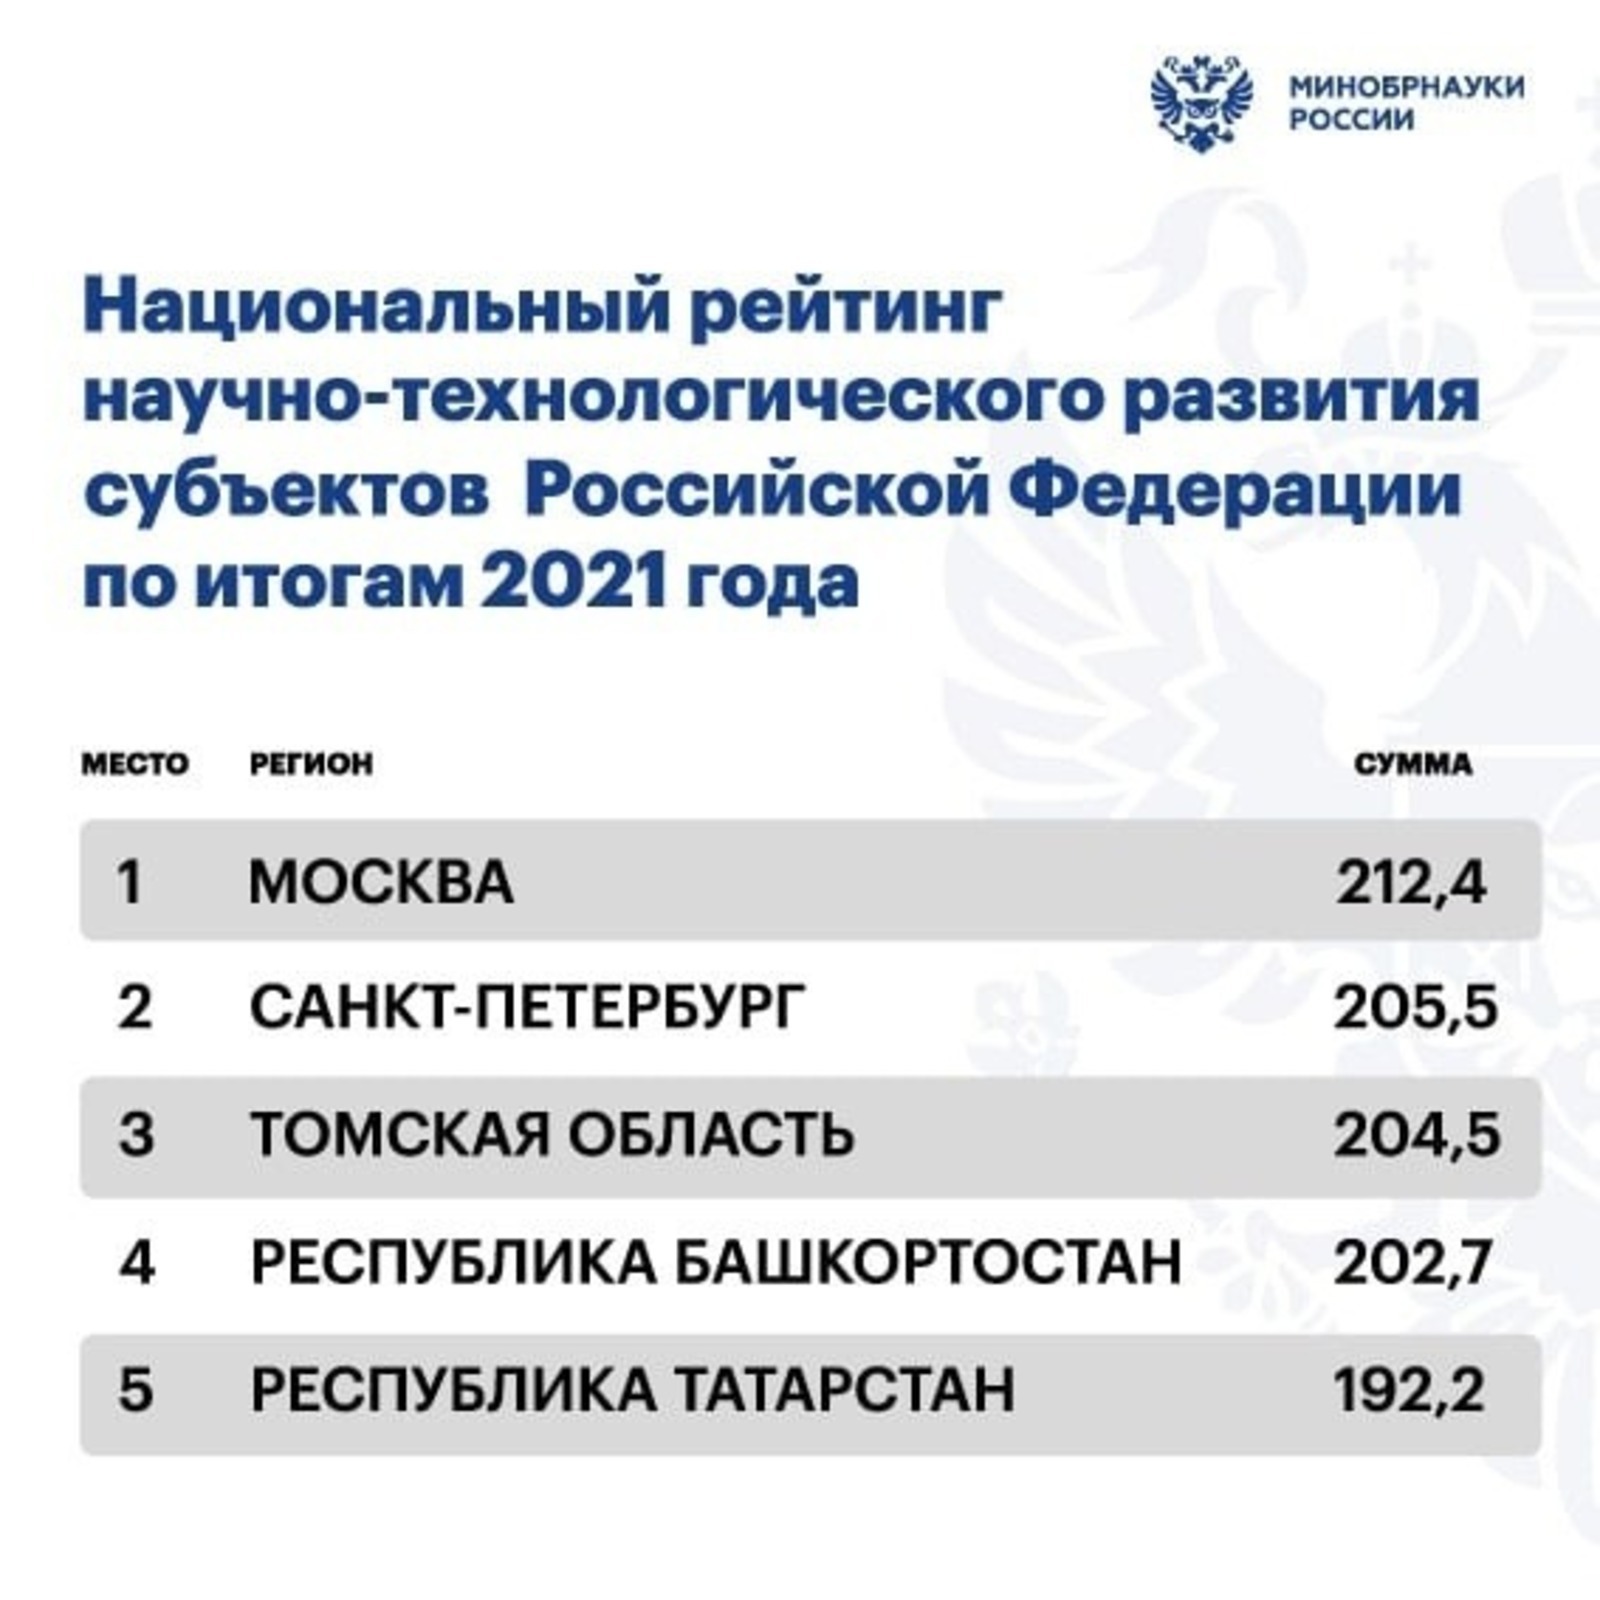 Башкирия на четвертом месте в I Национальном рейтинге научно-технологического развития регионов